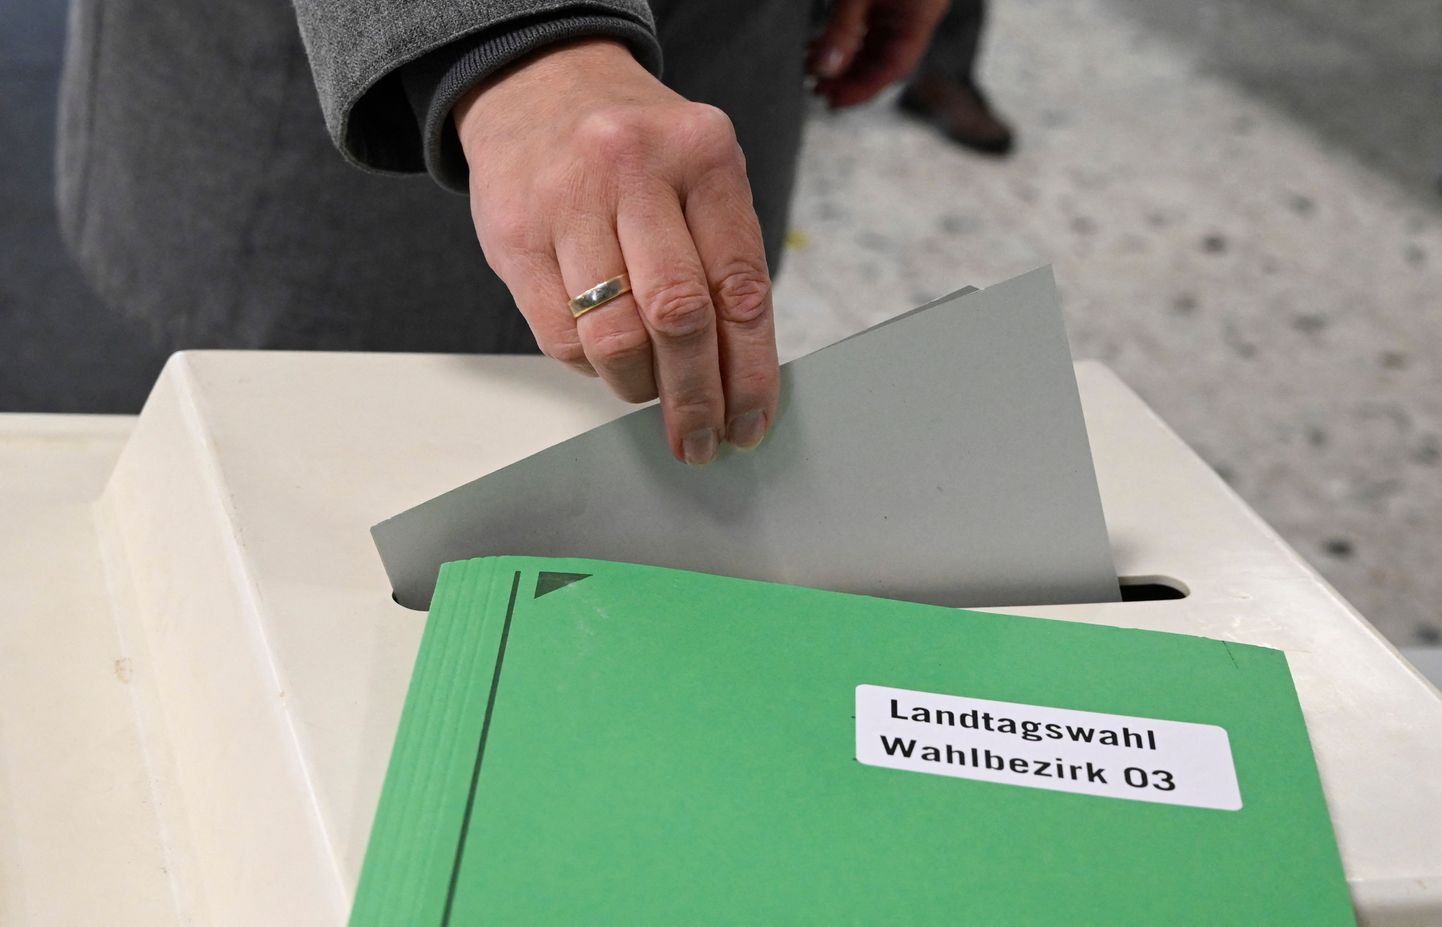 Valija Saksamaal hääletussedelit kasti libistamas.